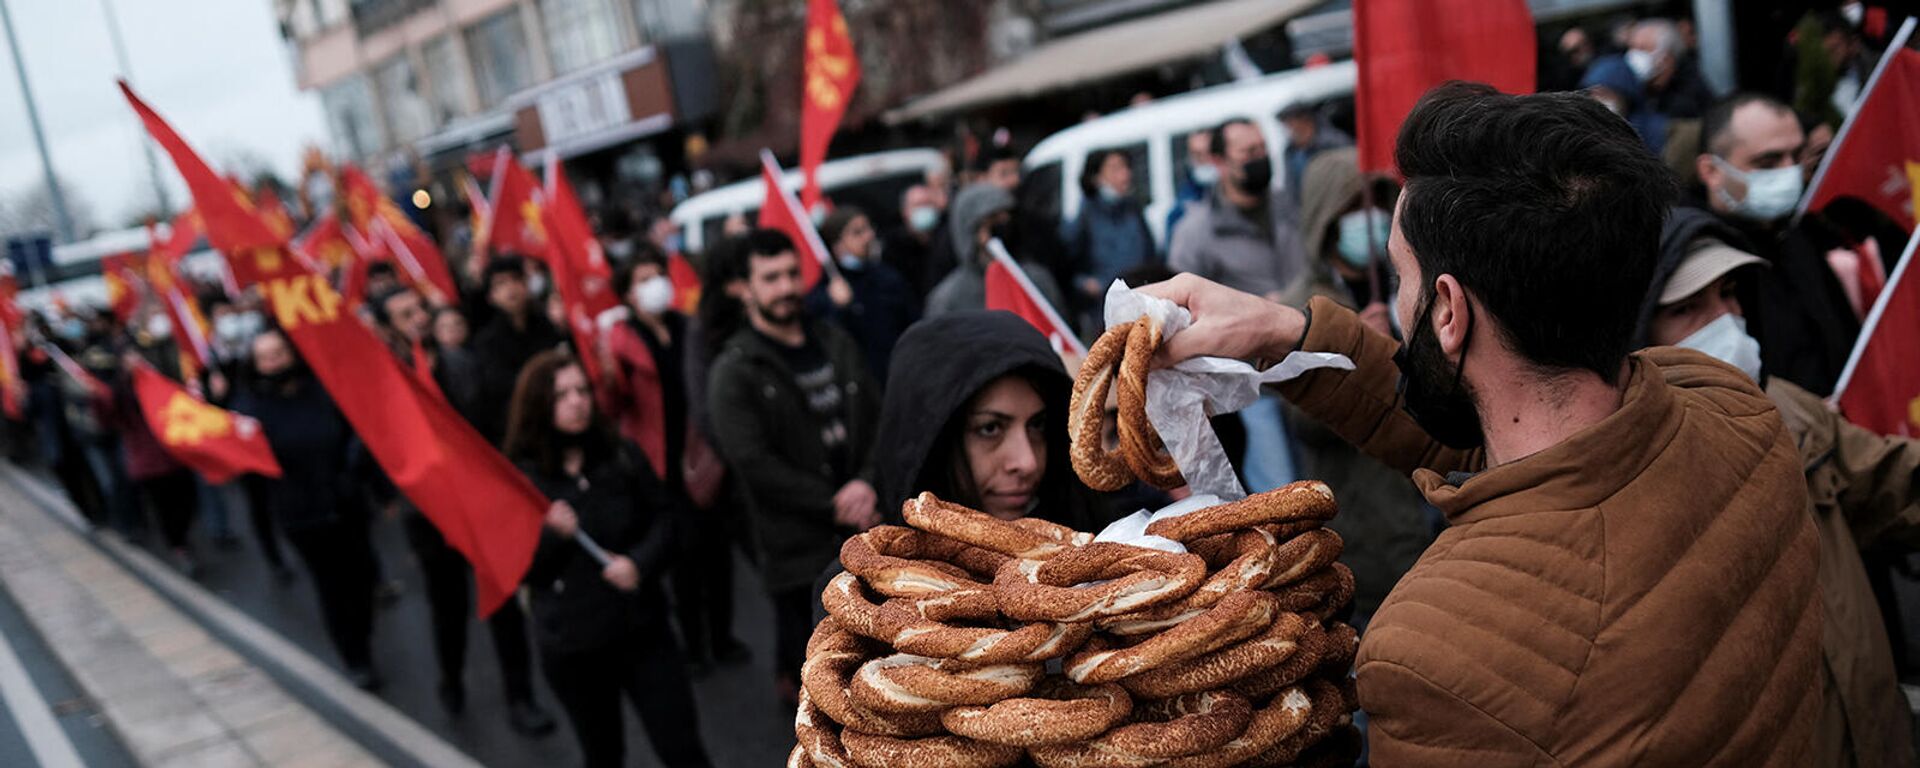 Уличный торговец продает симит, турецкую выпечку, во время акции протеста против экономической политики правительства (12 декабря 2021). Стамбул - Sputnik Армения, 1920, 14.12.2021